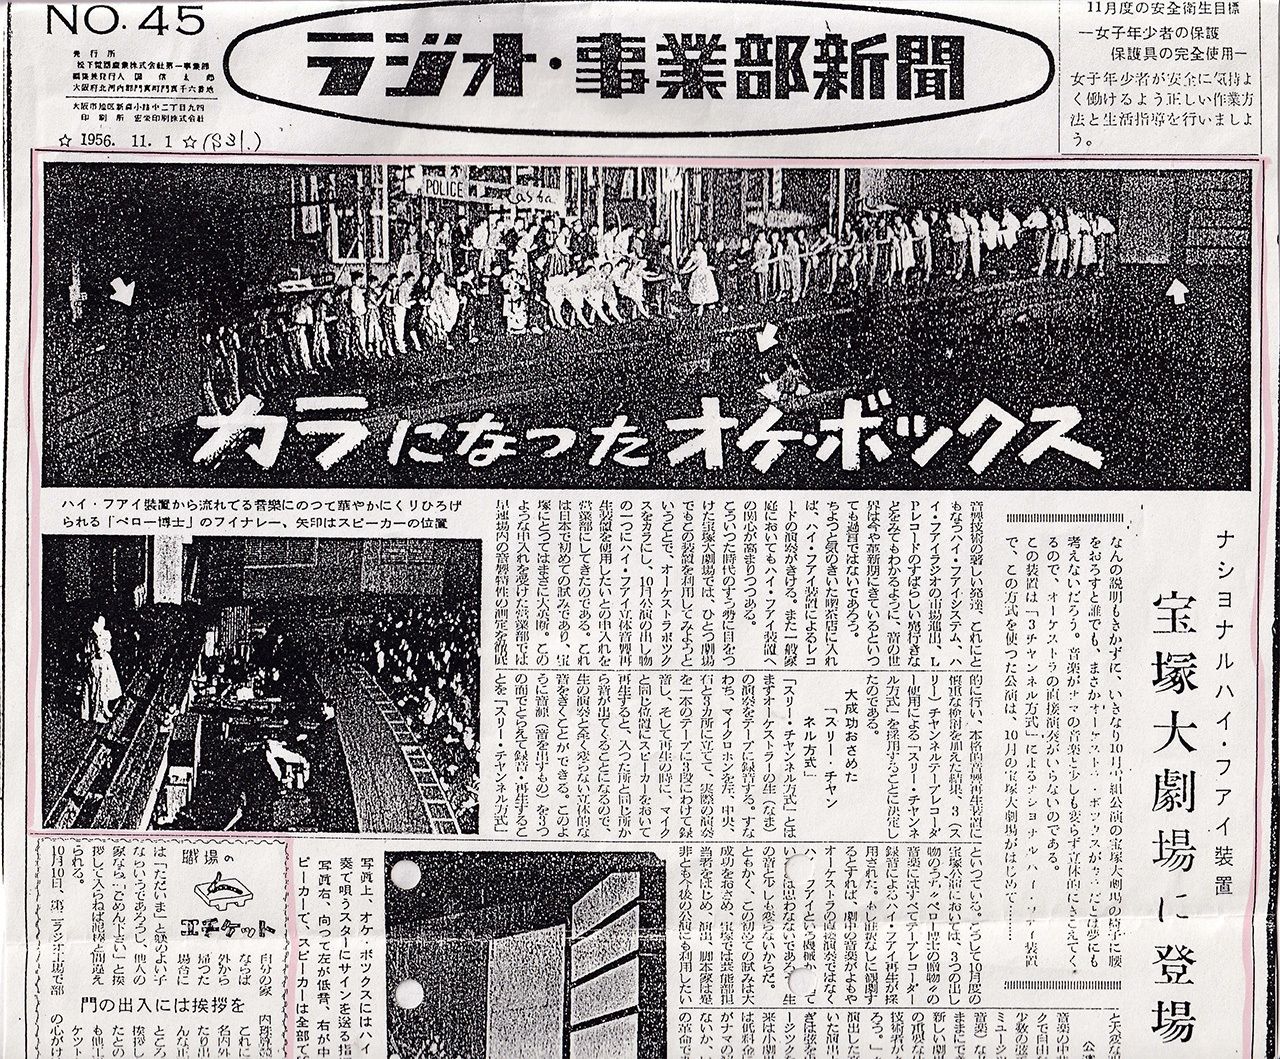 現場沒有樂隊，而是使用了松下電器的音響設備，報紙《廣播與事業部新聞》對寶塚劇場的公演情景進行了報導，1956年11月1日刊（筆者攝影）